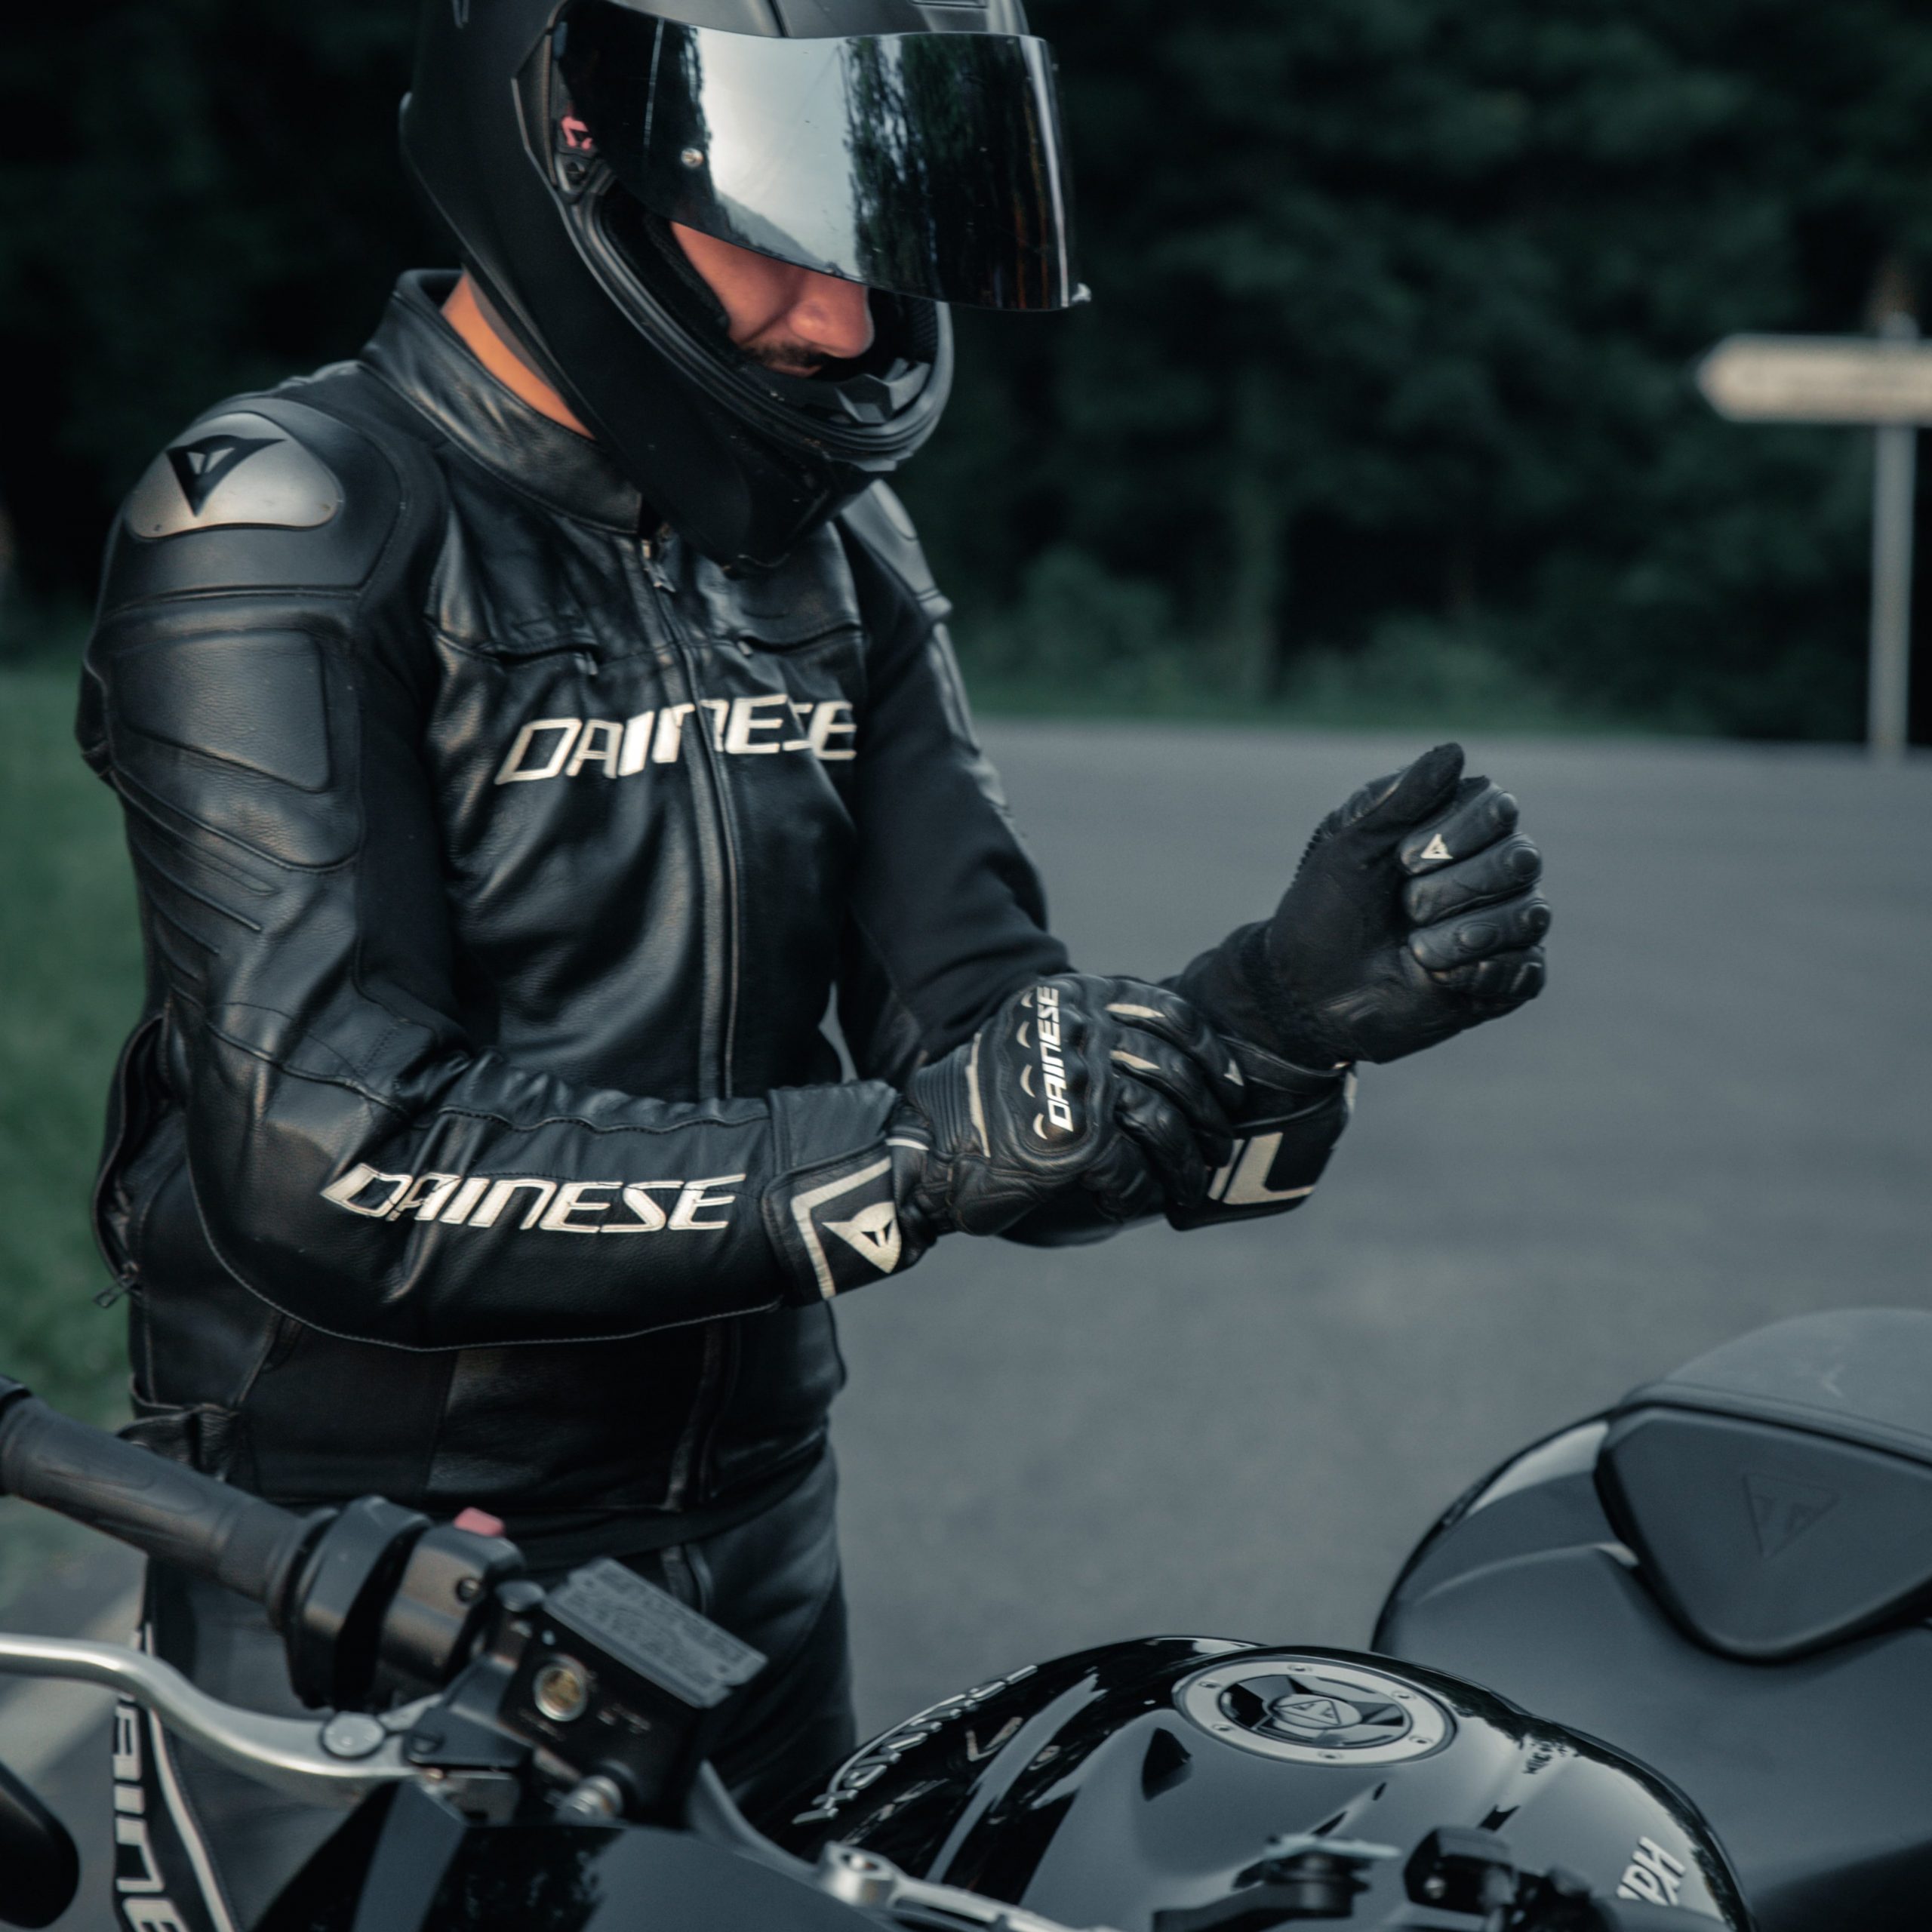 cazadora de verano para moto chaqueta LOVO para moto